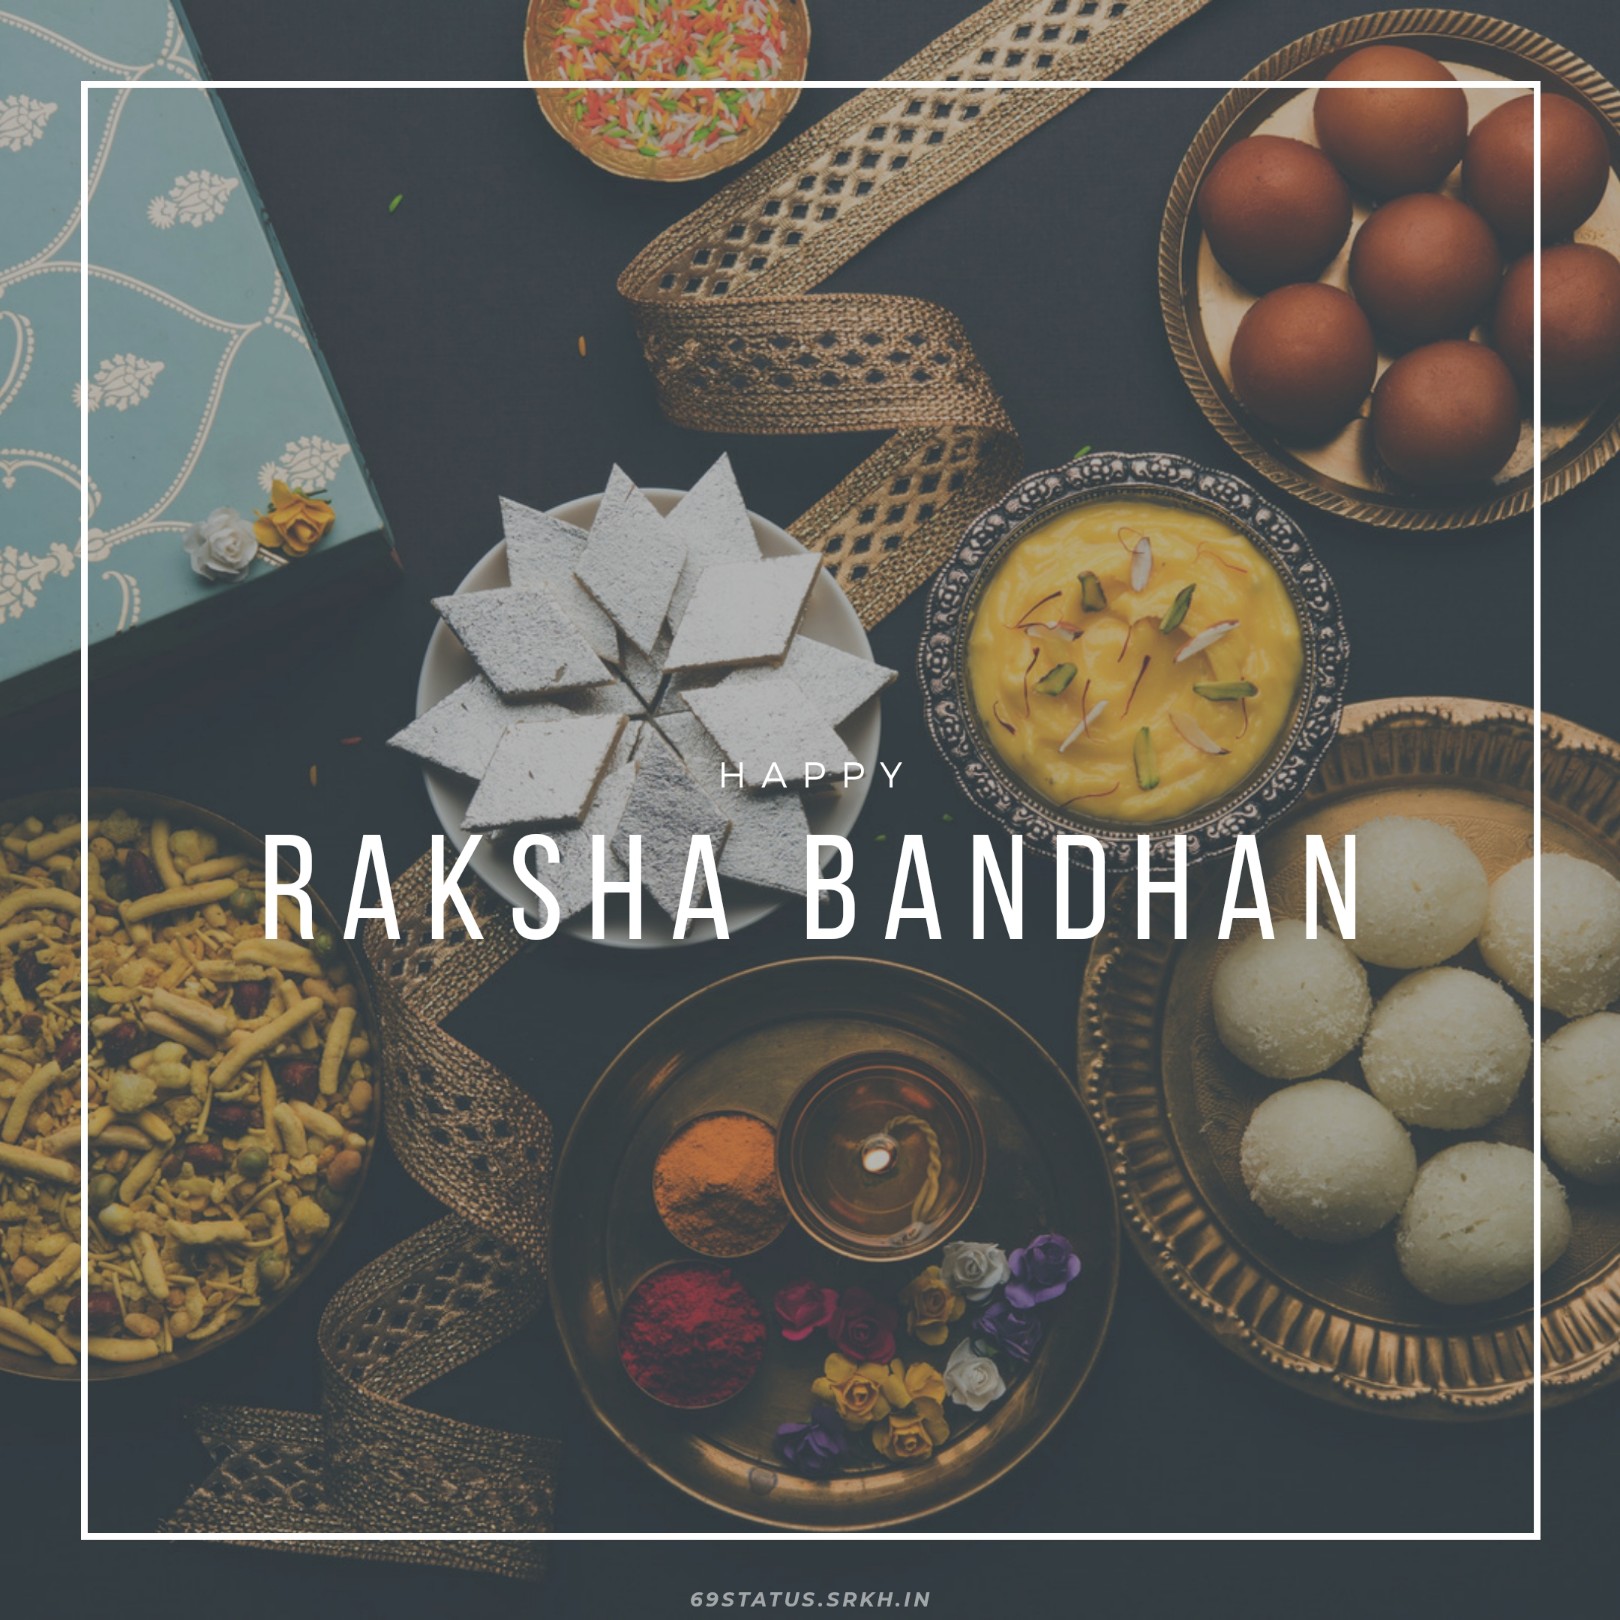 Raksha+bandhan+images